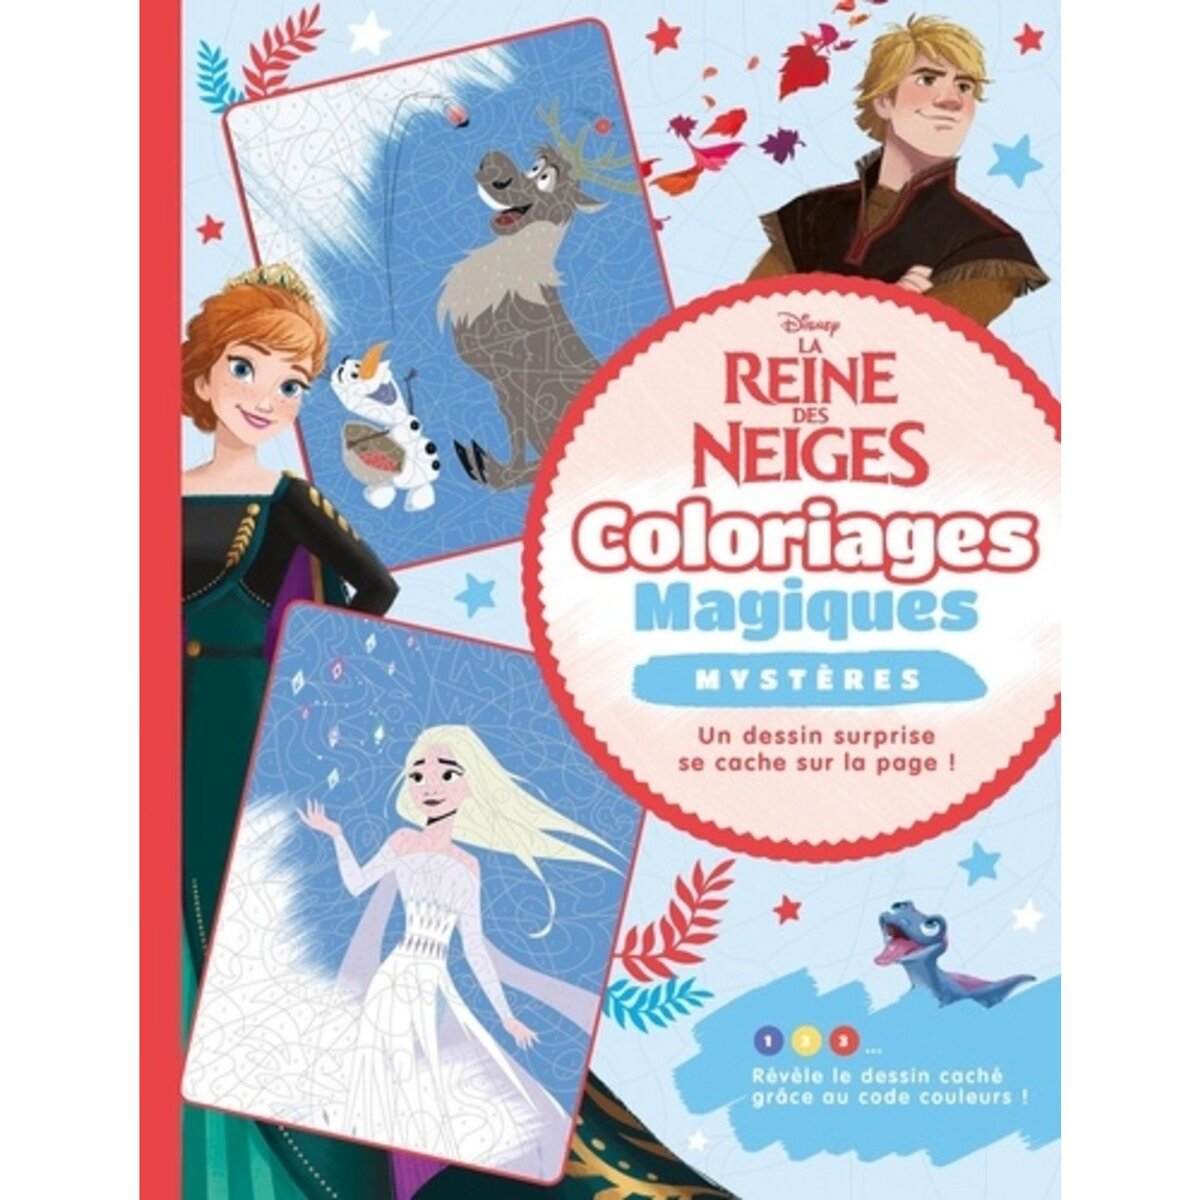 Stickers repositionnable Disney - La Reine des Neiges 2 - modèle